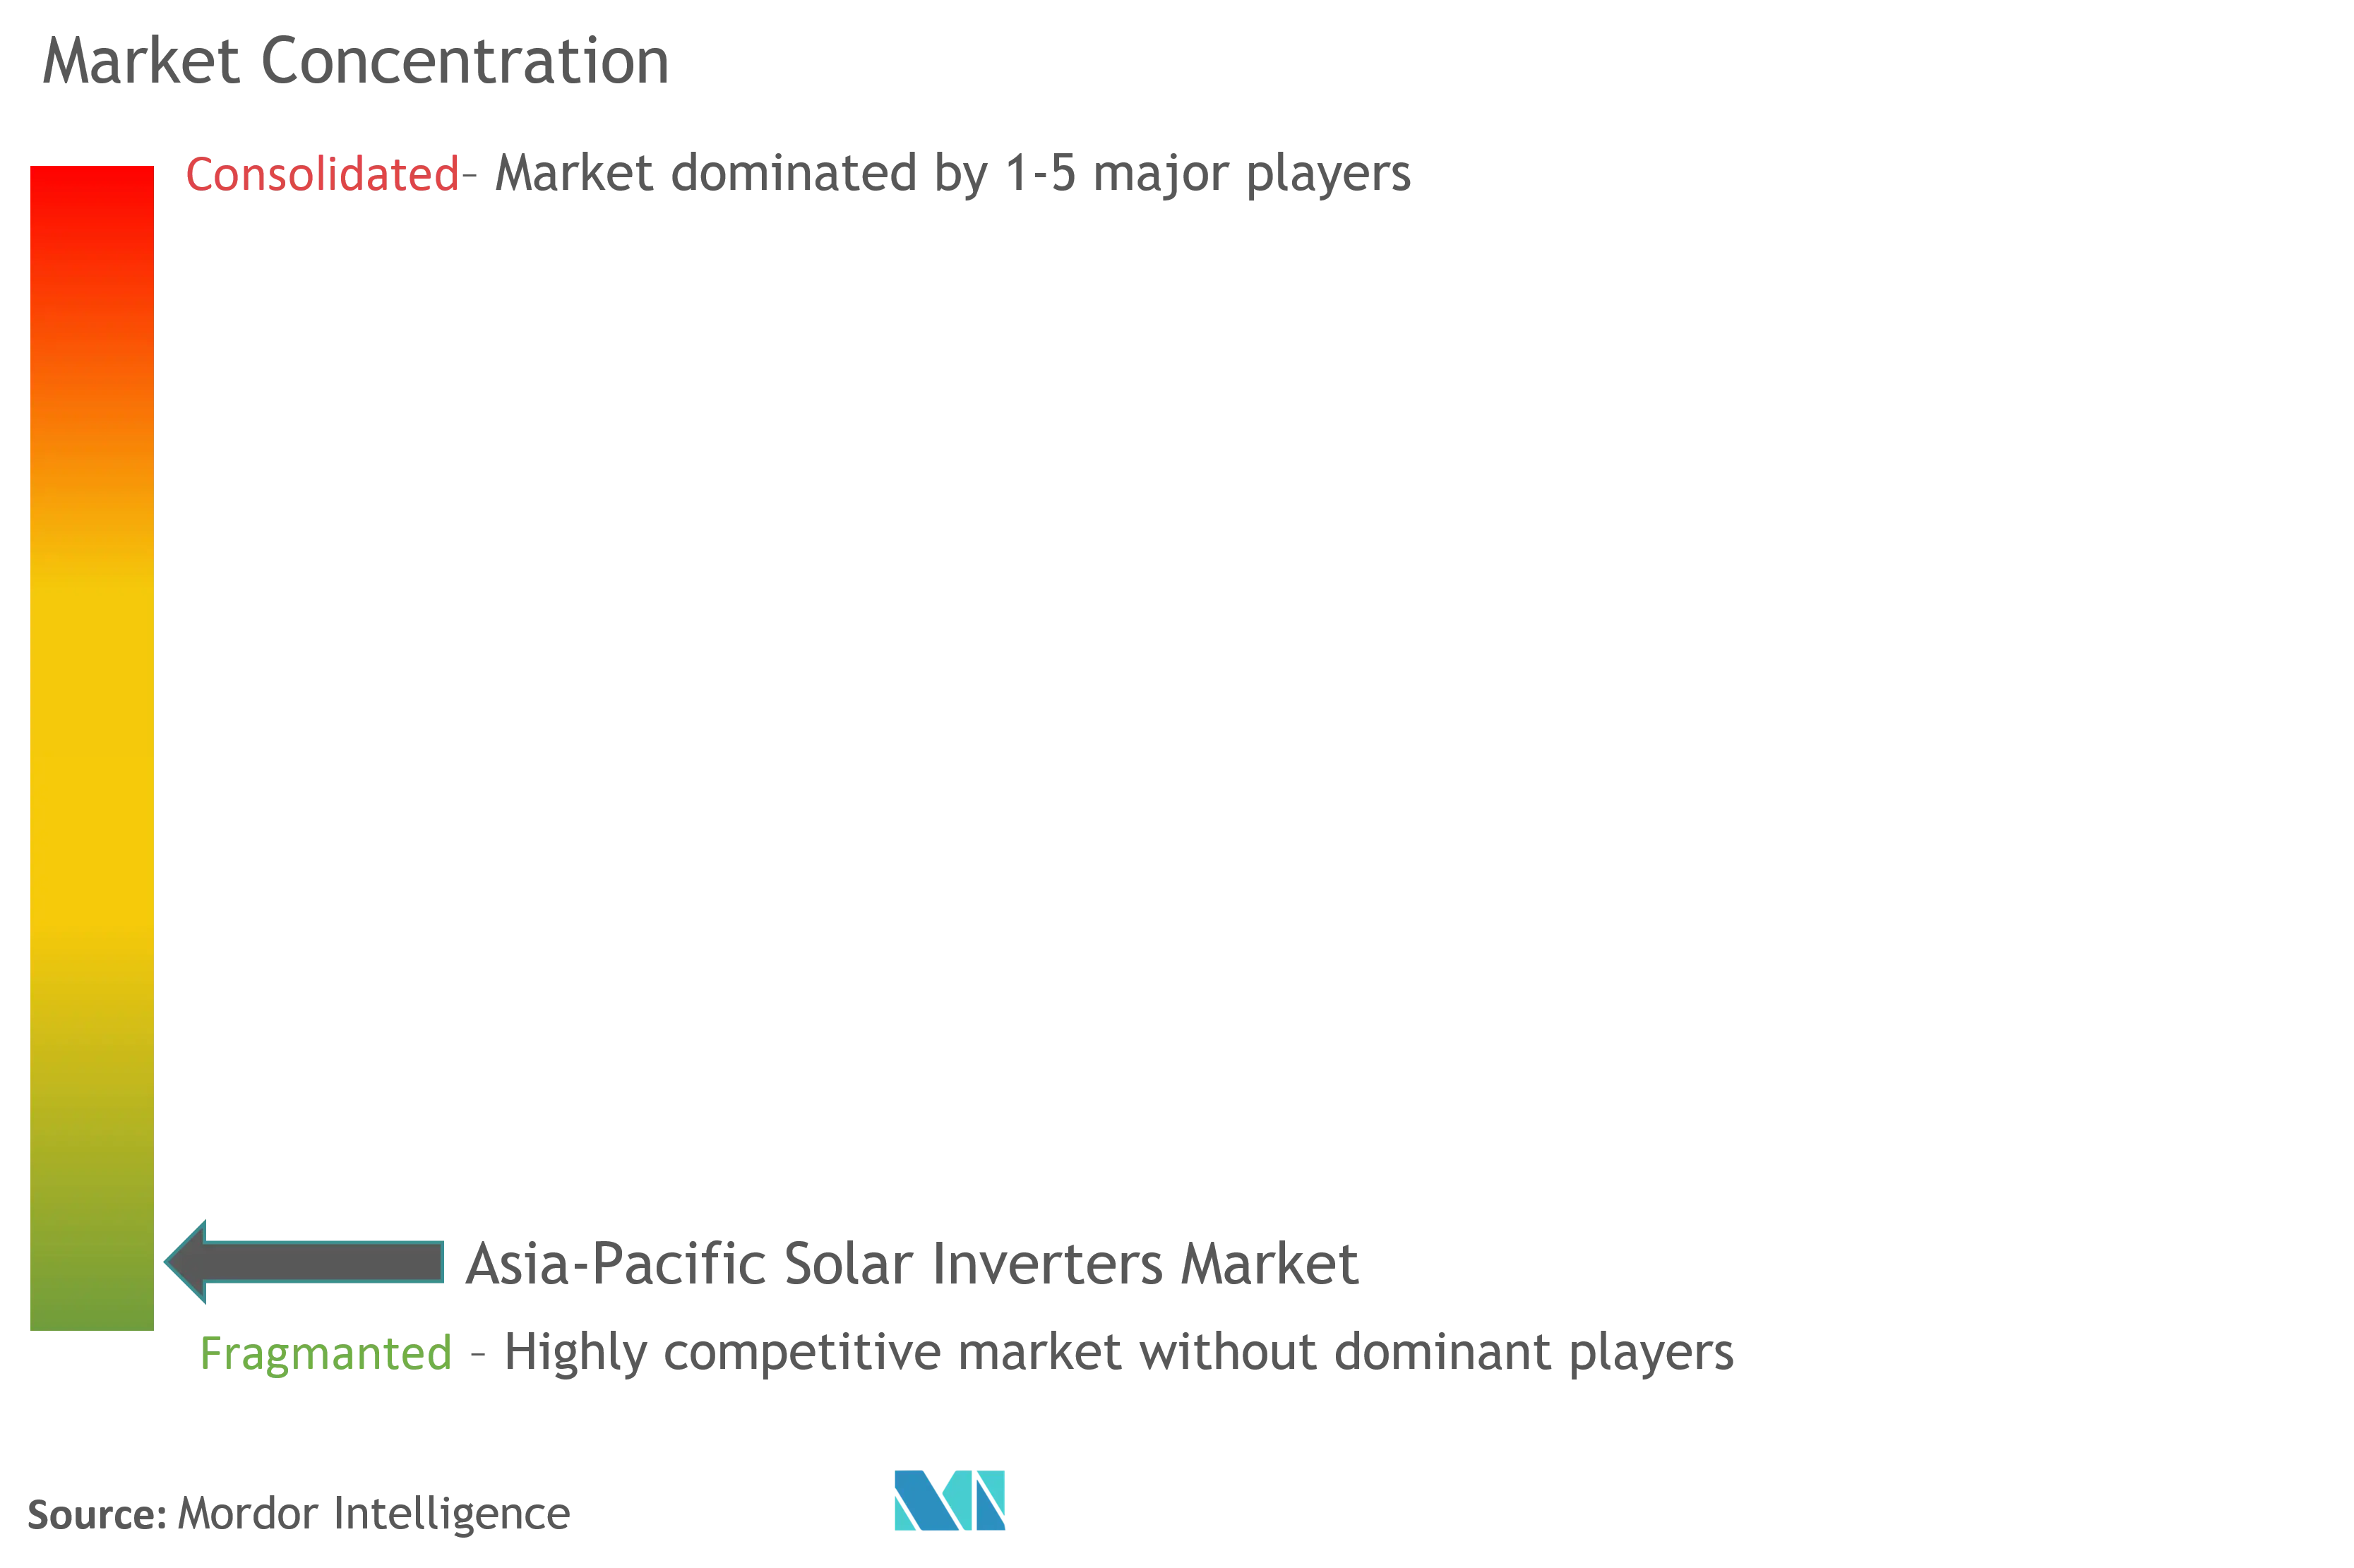 アジア太平洋地域の太陽光発電インバーター市場集中度